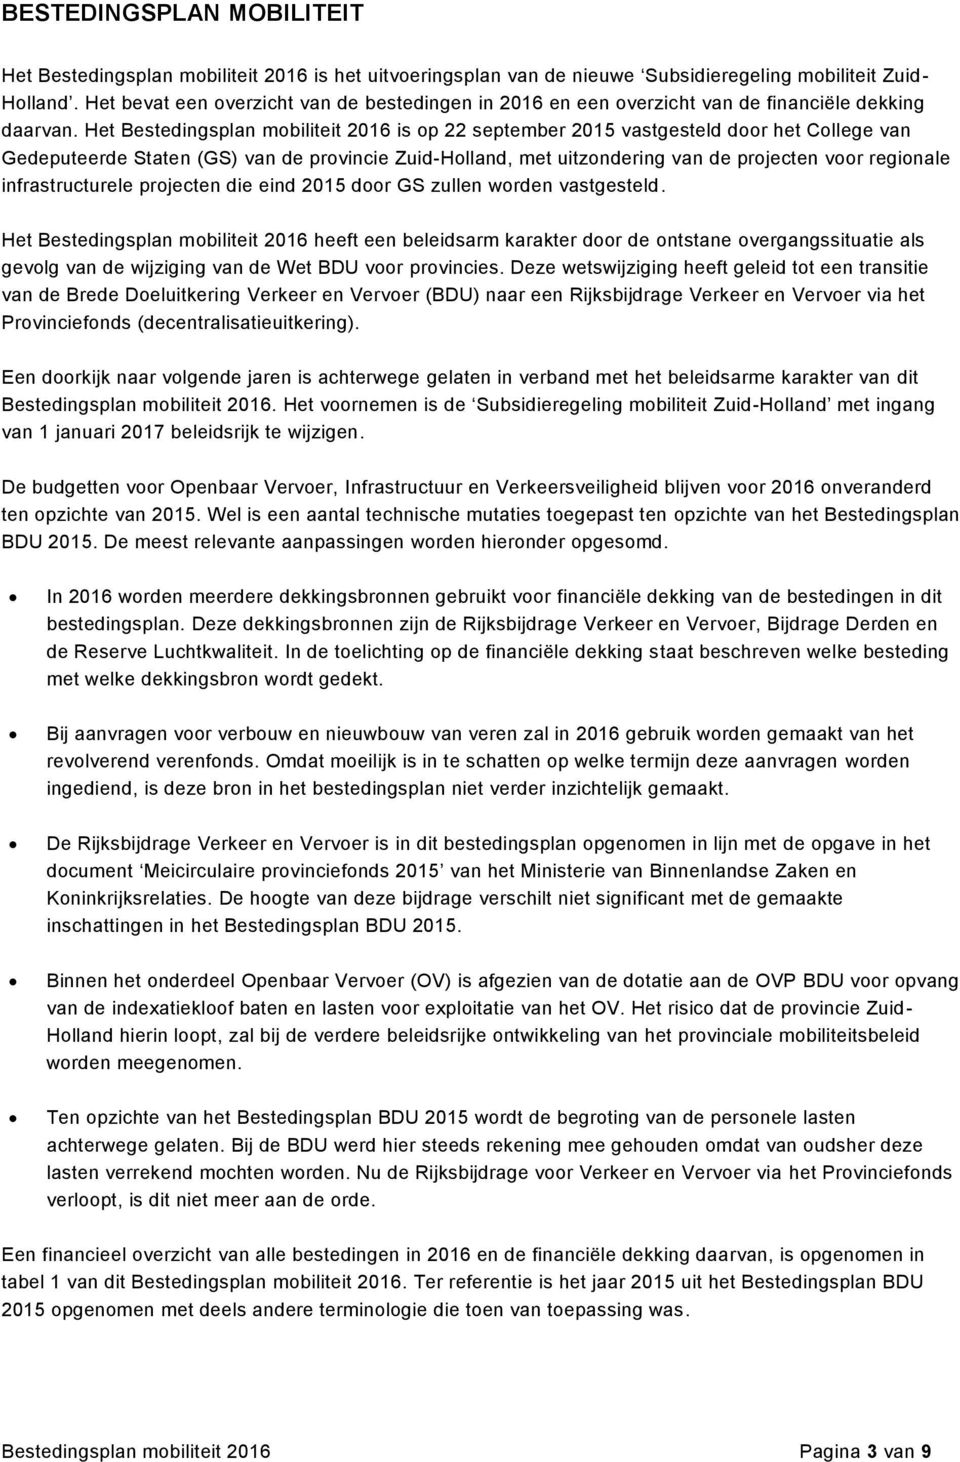 Het Bestedingsplan mobiliteit 2016 is op 22 september 2015 vastgesteld door het College van Gedeputeerde Staten (GS) van de provincie Zuid-Holland, met uitzondering van de projecten voor regionale